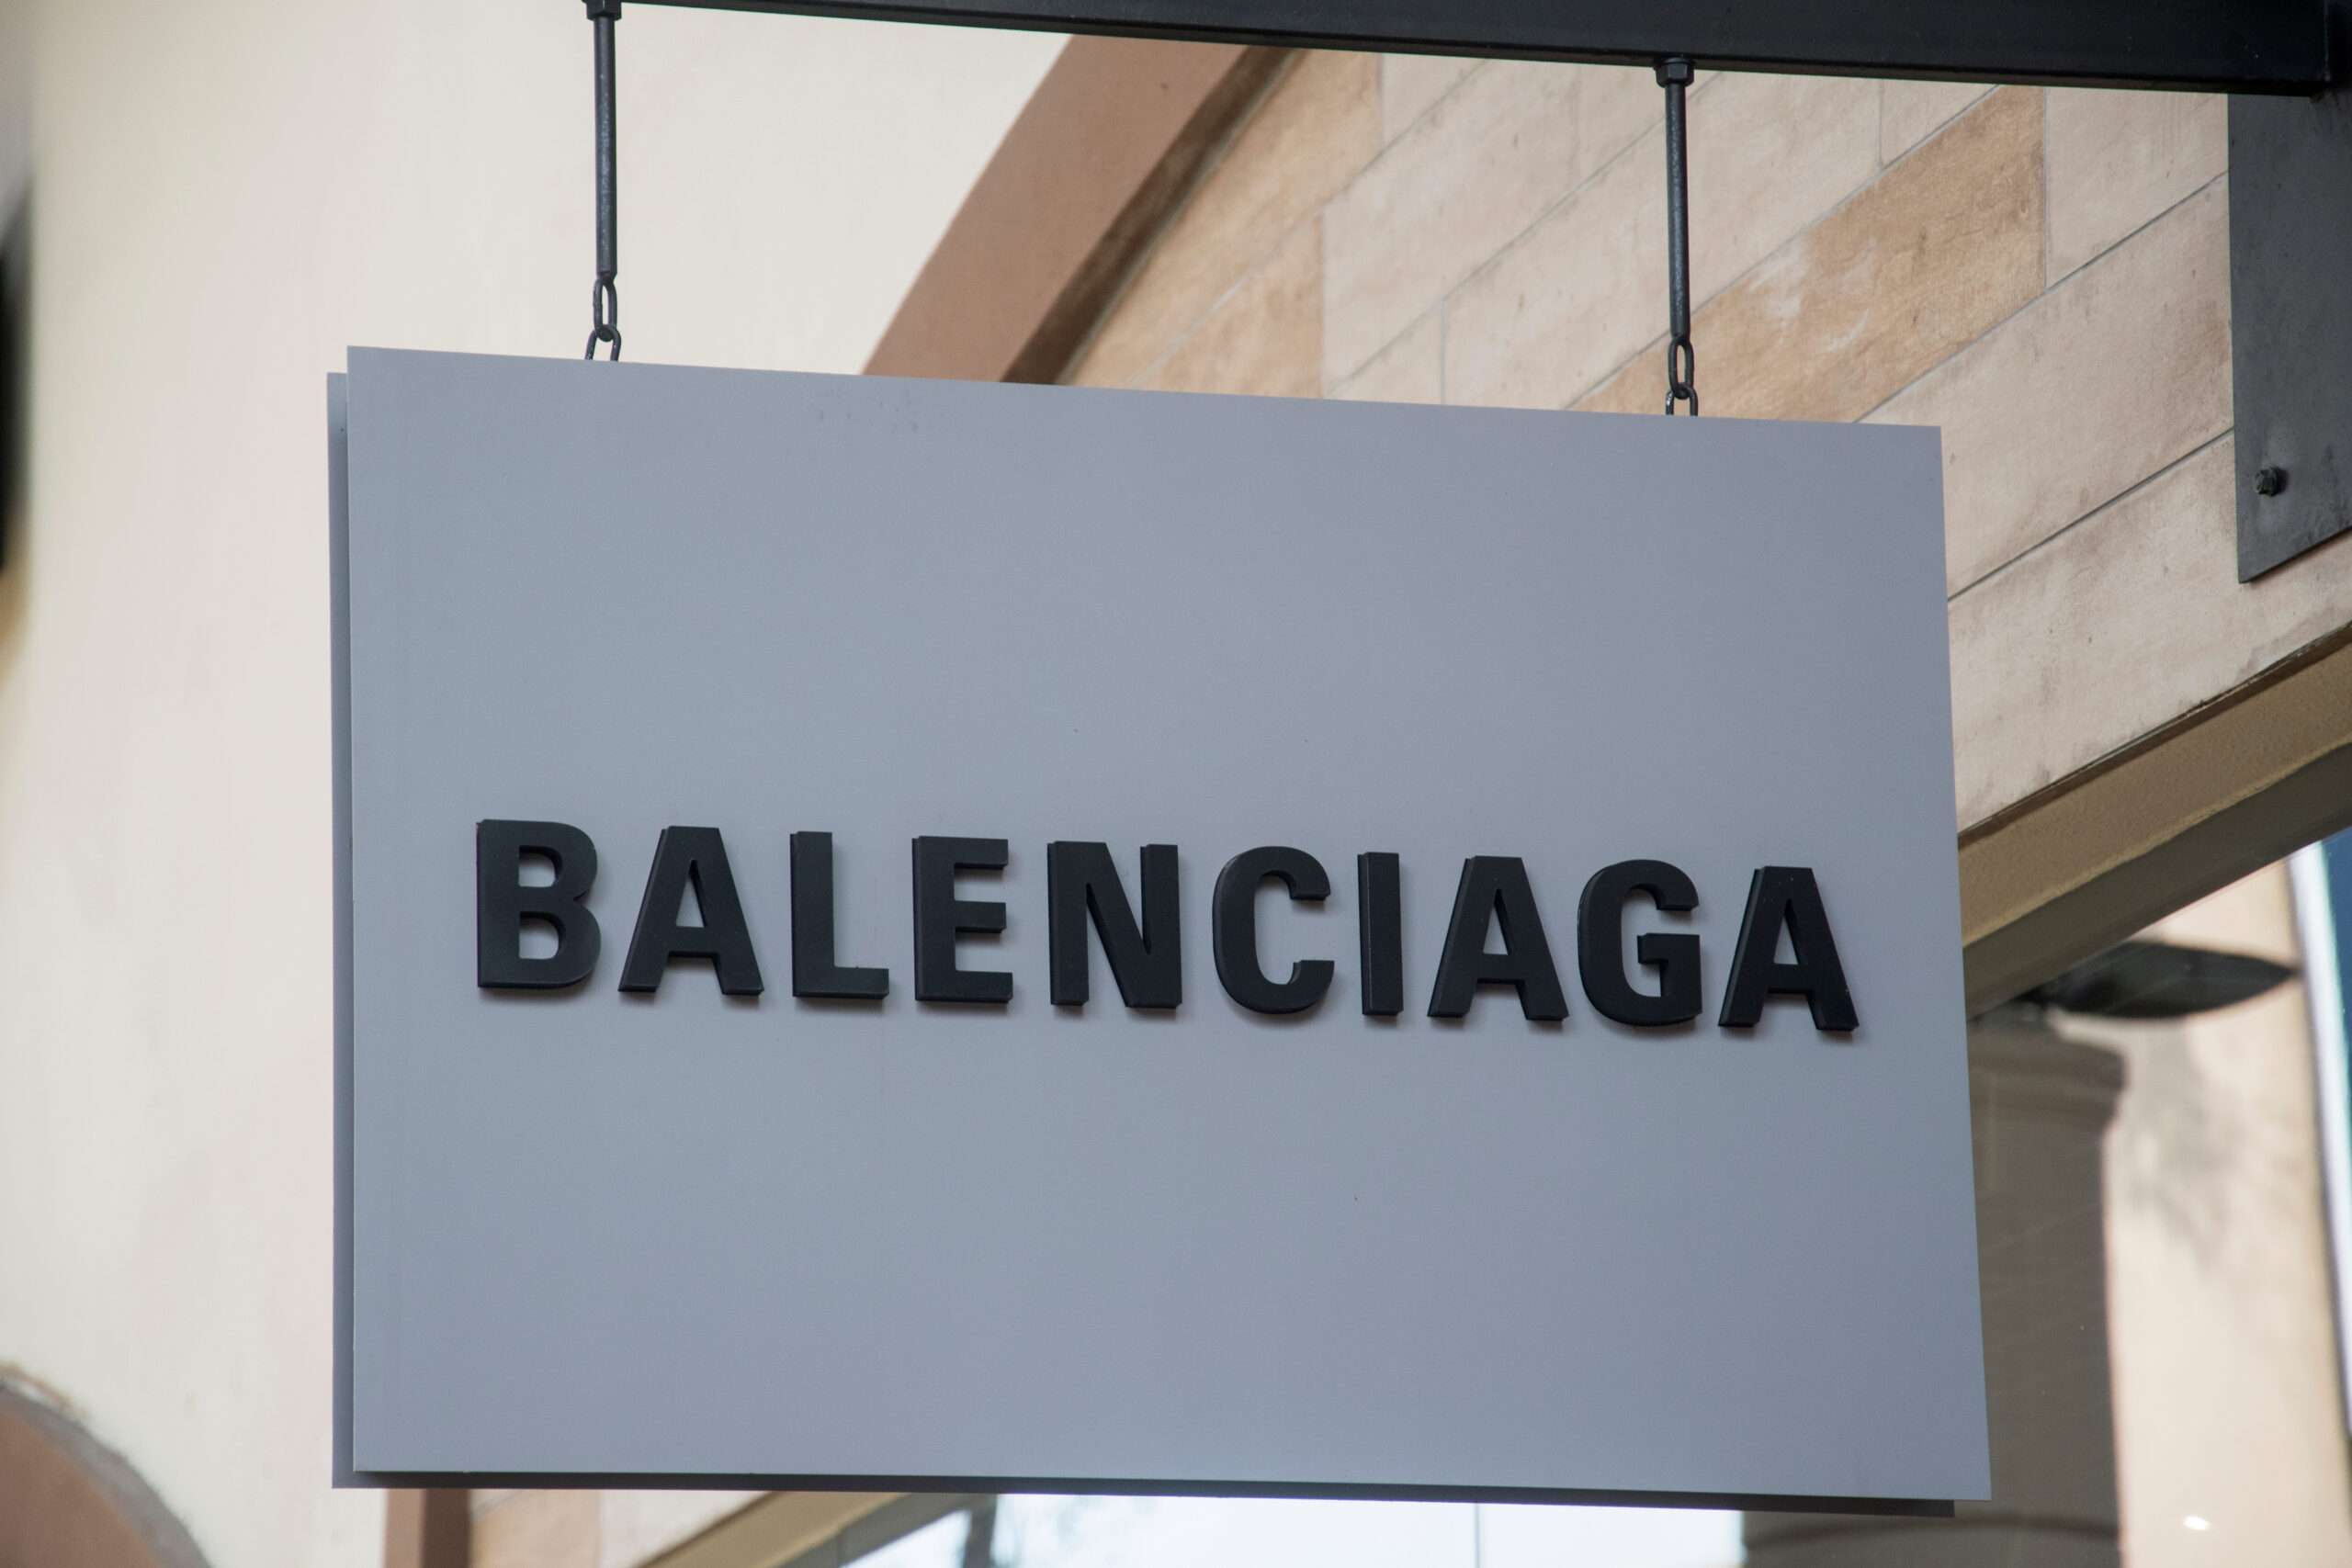 Balenciaga: French luxe brand Balenciaga launches 'fully-destroyed